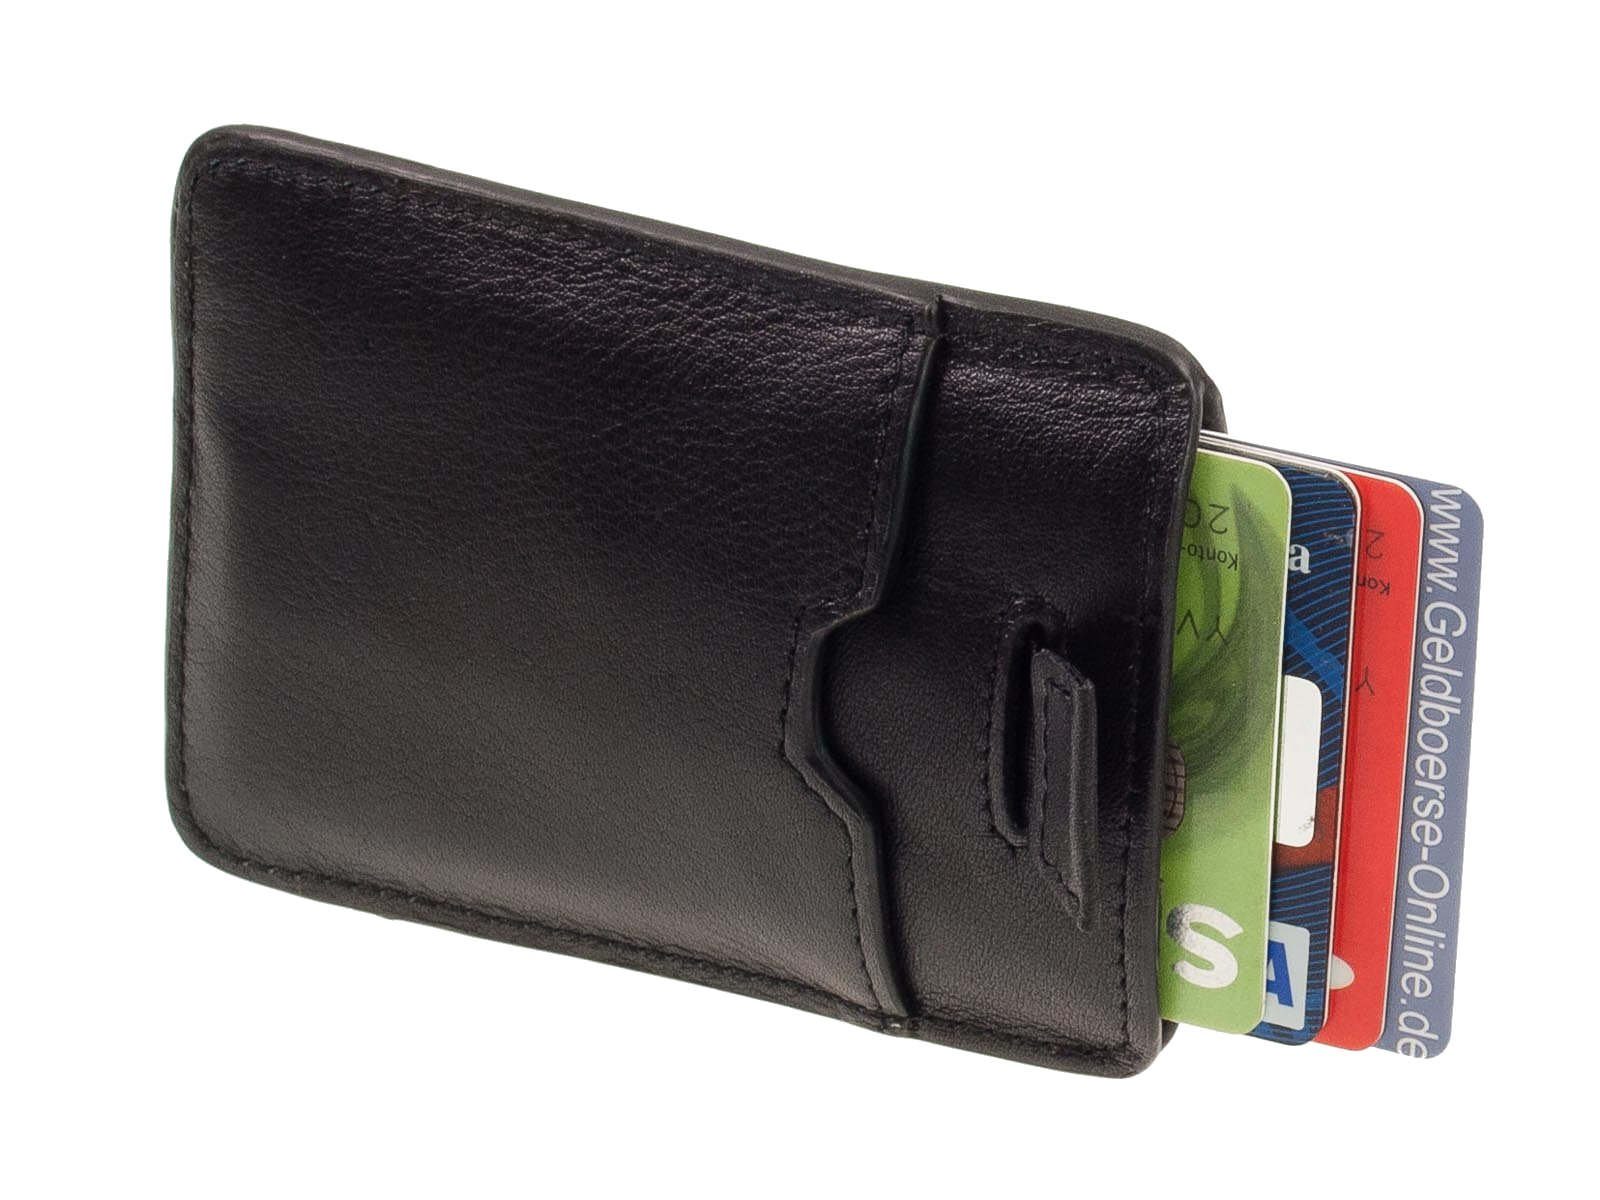 Zugband Safe Soft Picard mit Picard Geldbörse mit Kreditkartenetui